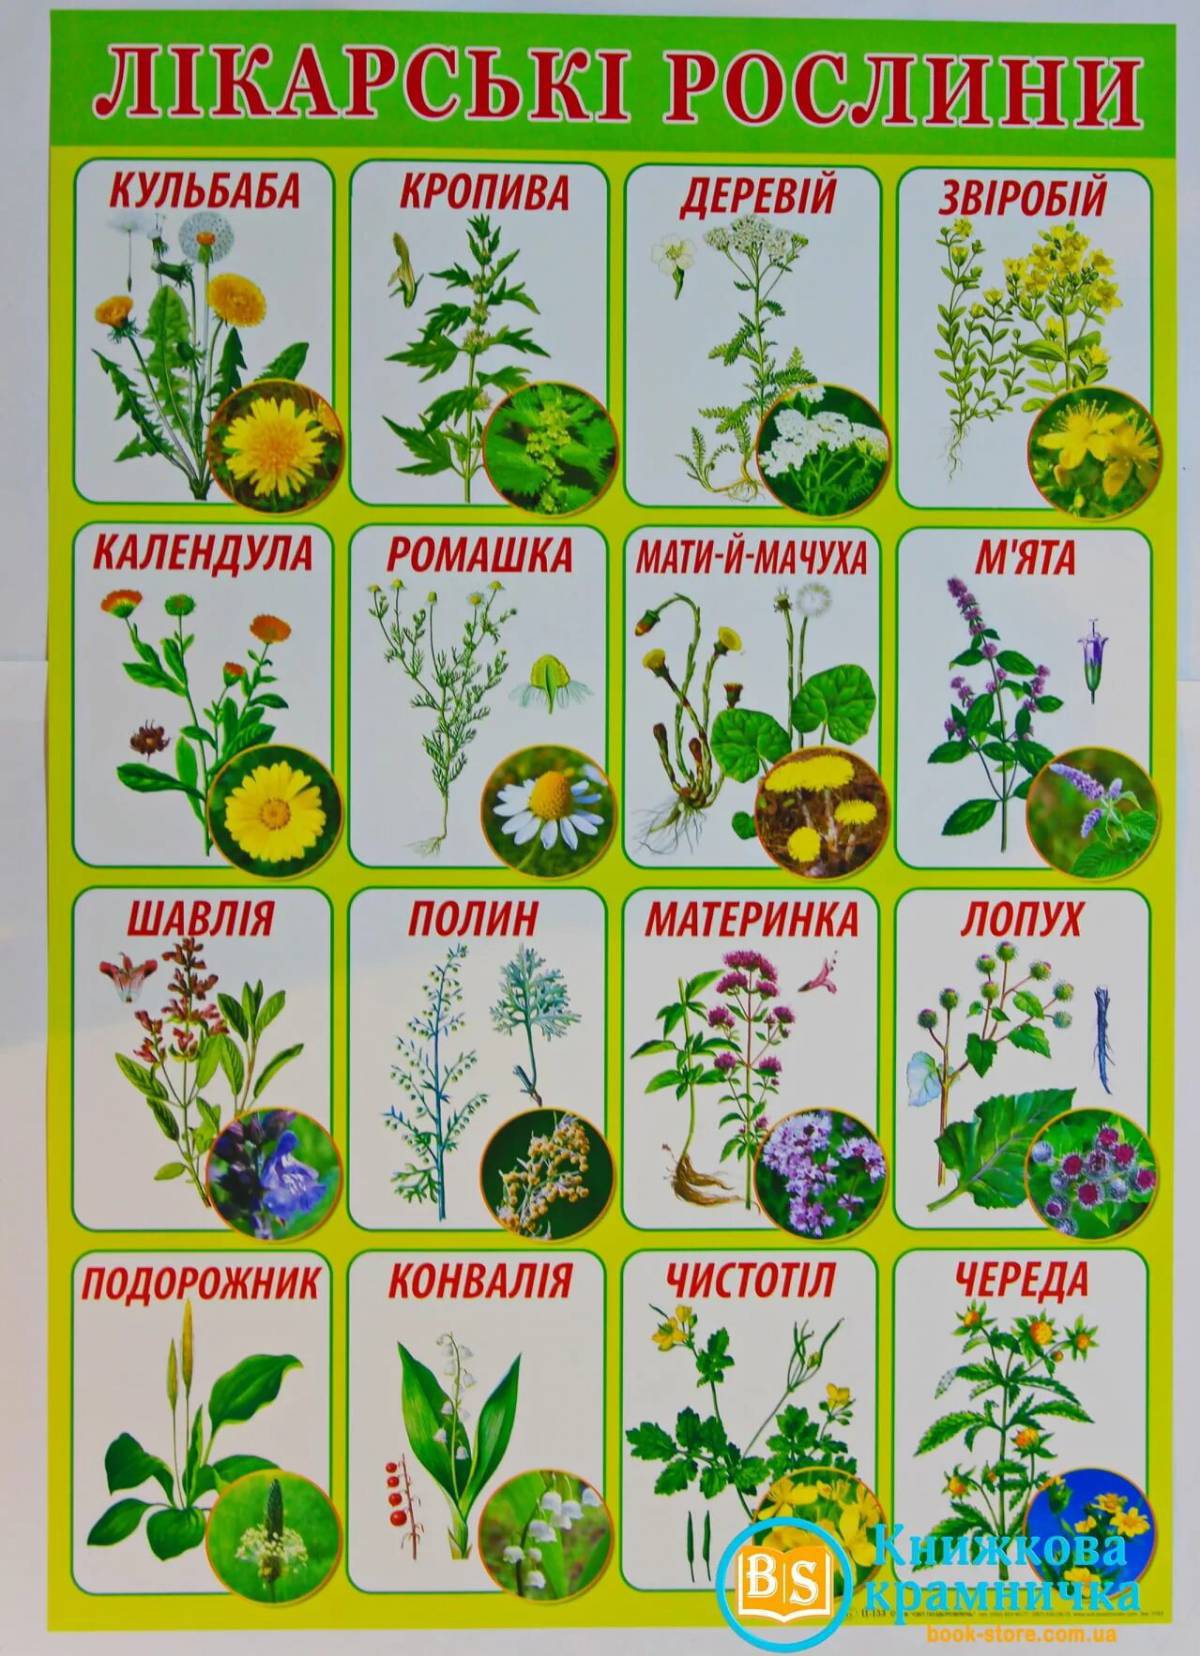 Лекарственные растения и травы картинки для изучения.